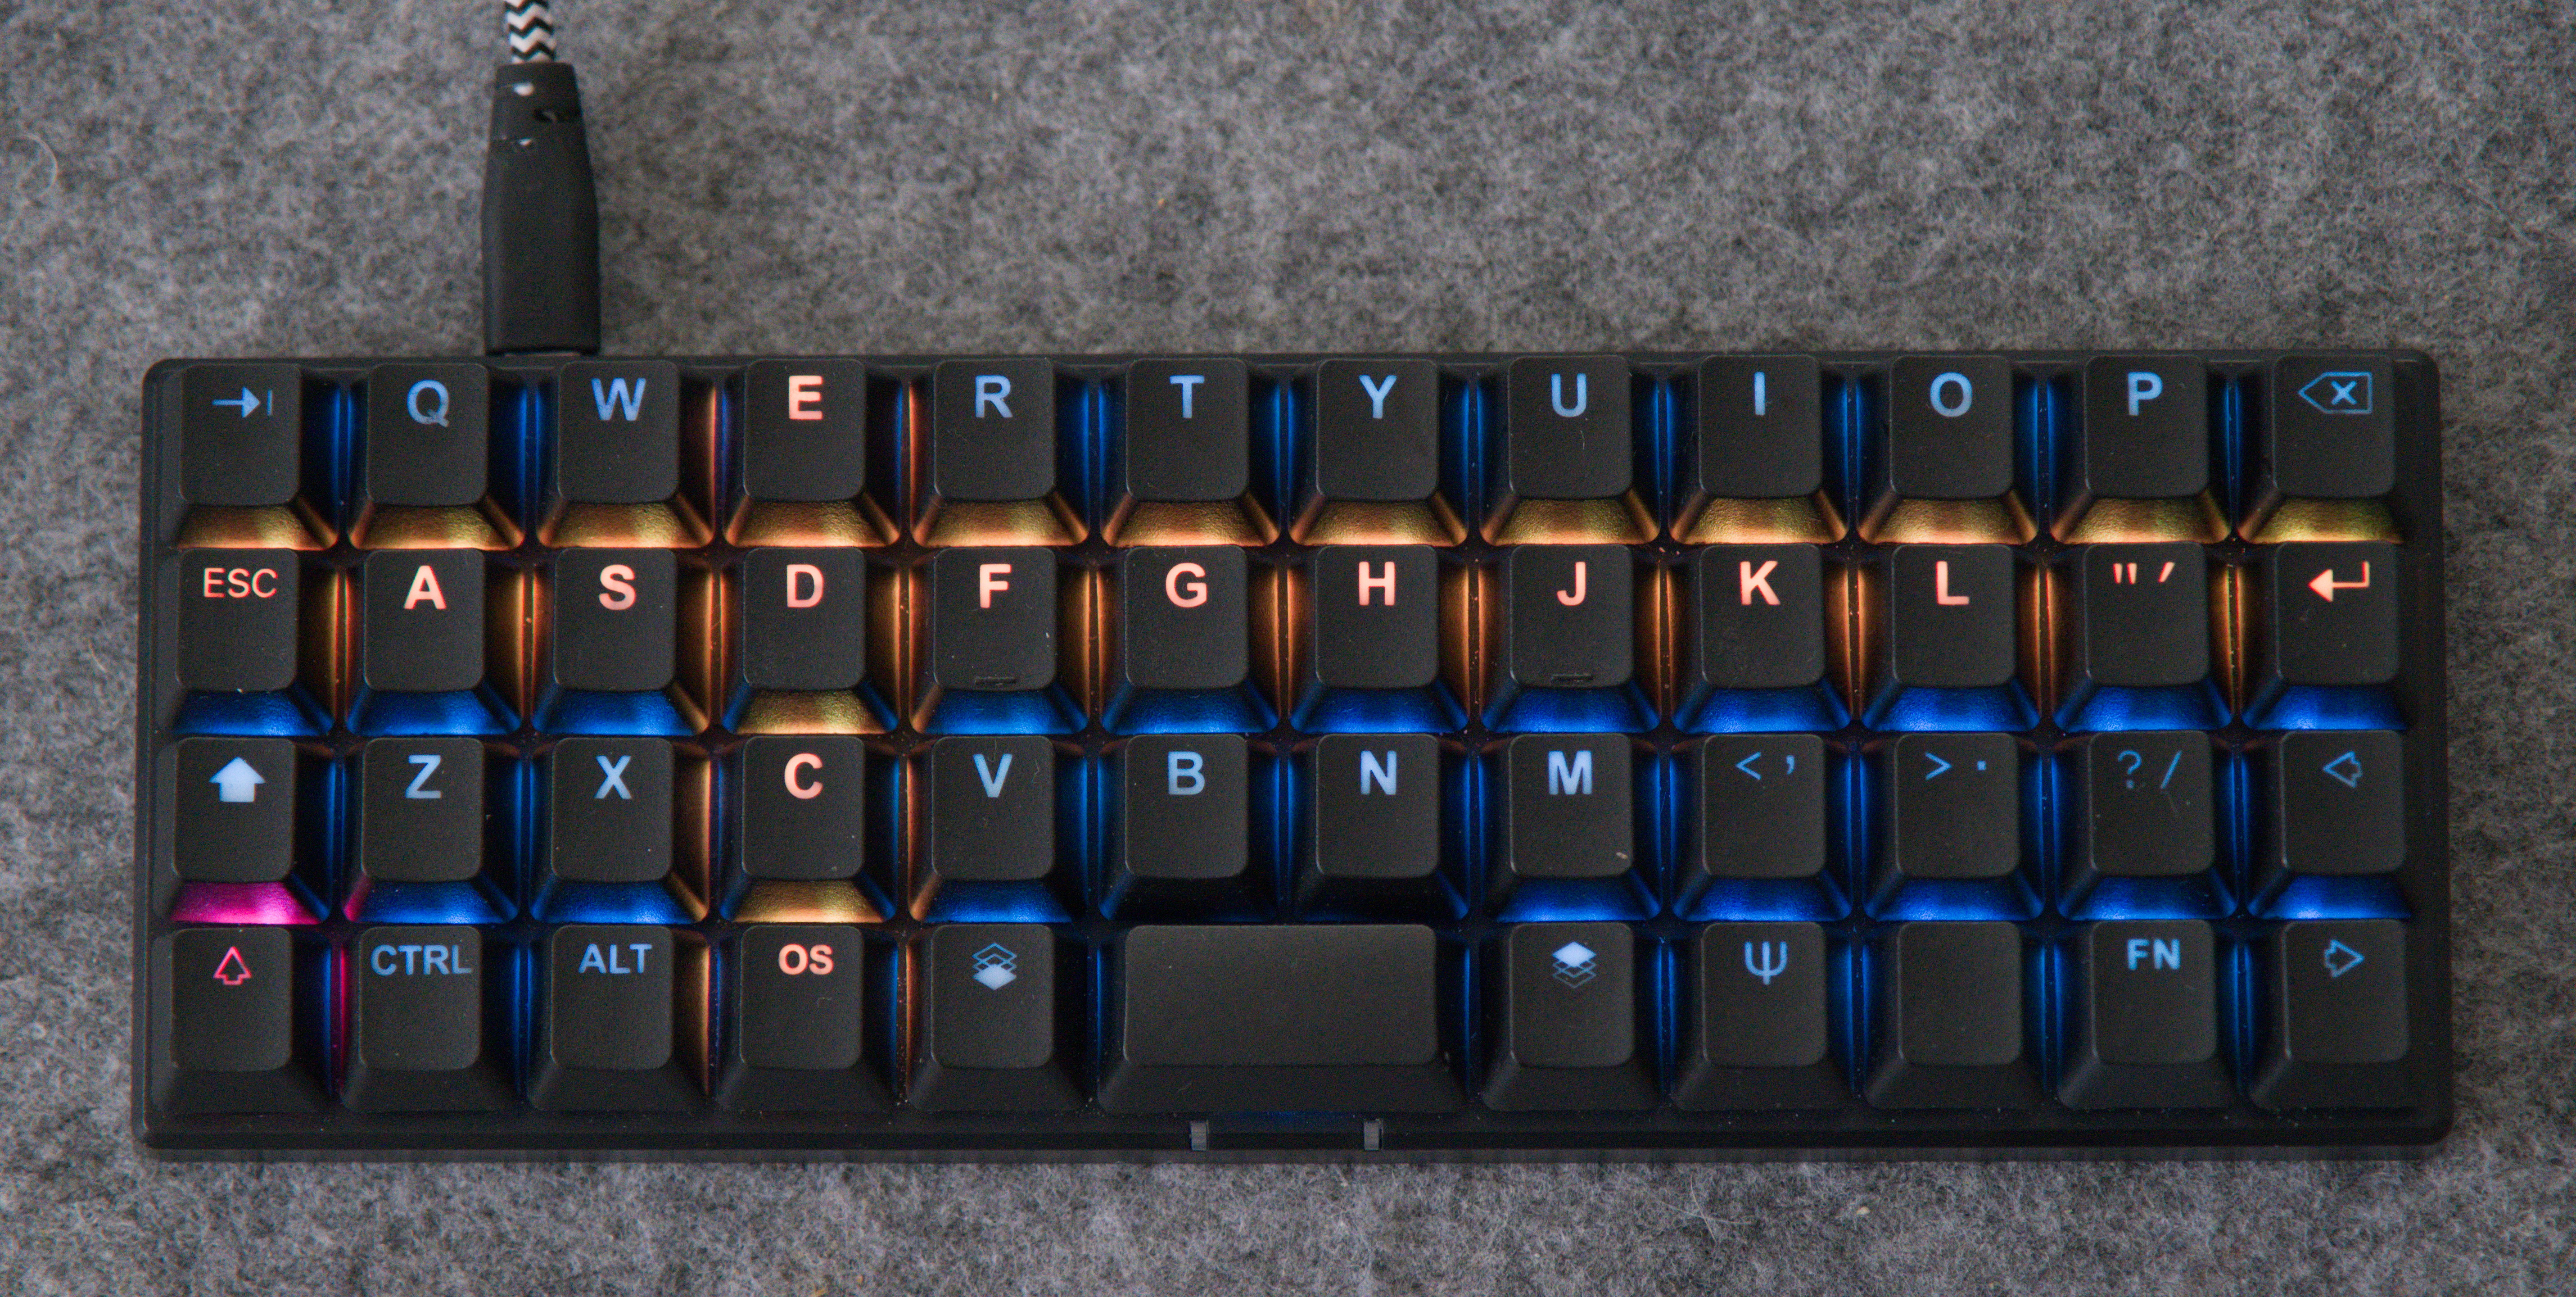 The ortholinear 40% Planck keyboard